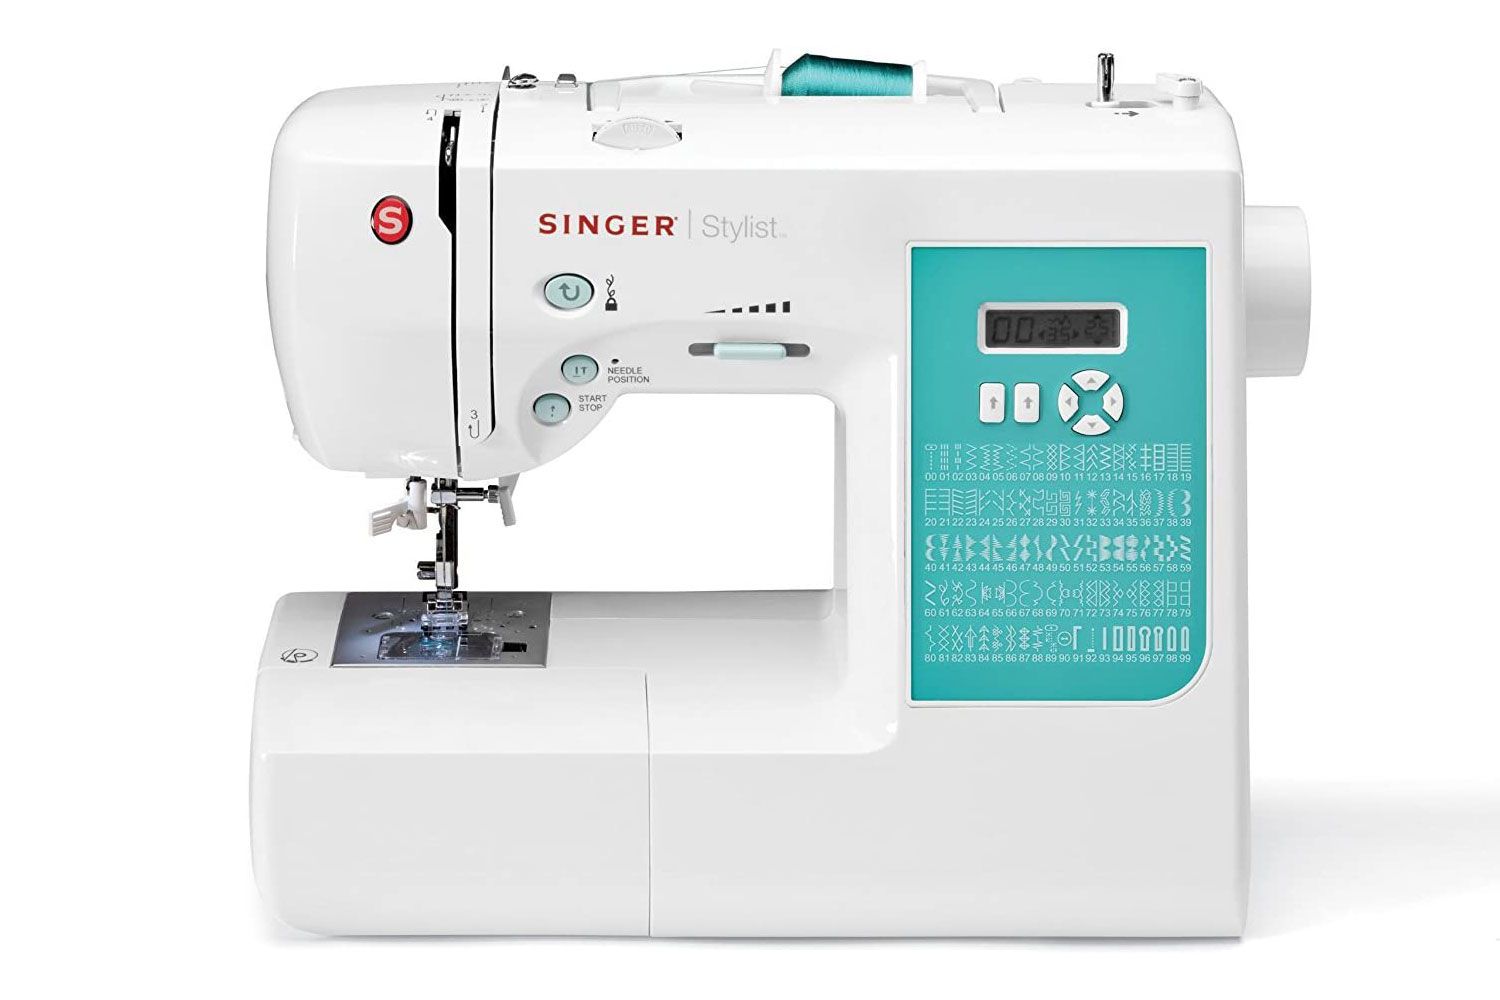 SINGER Stylist 7258 Sewing Machine